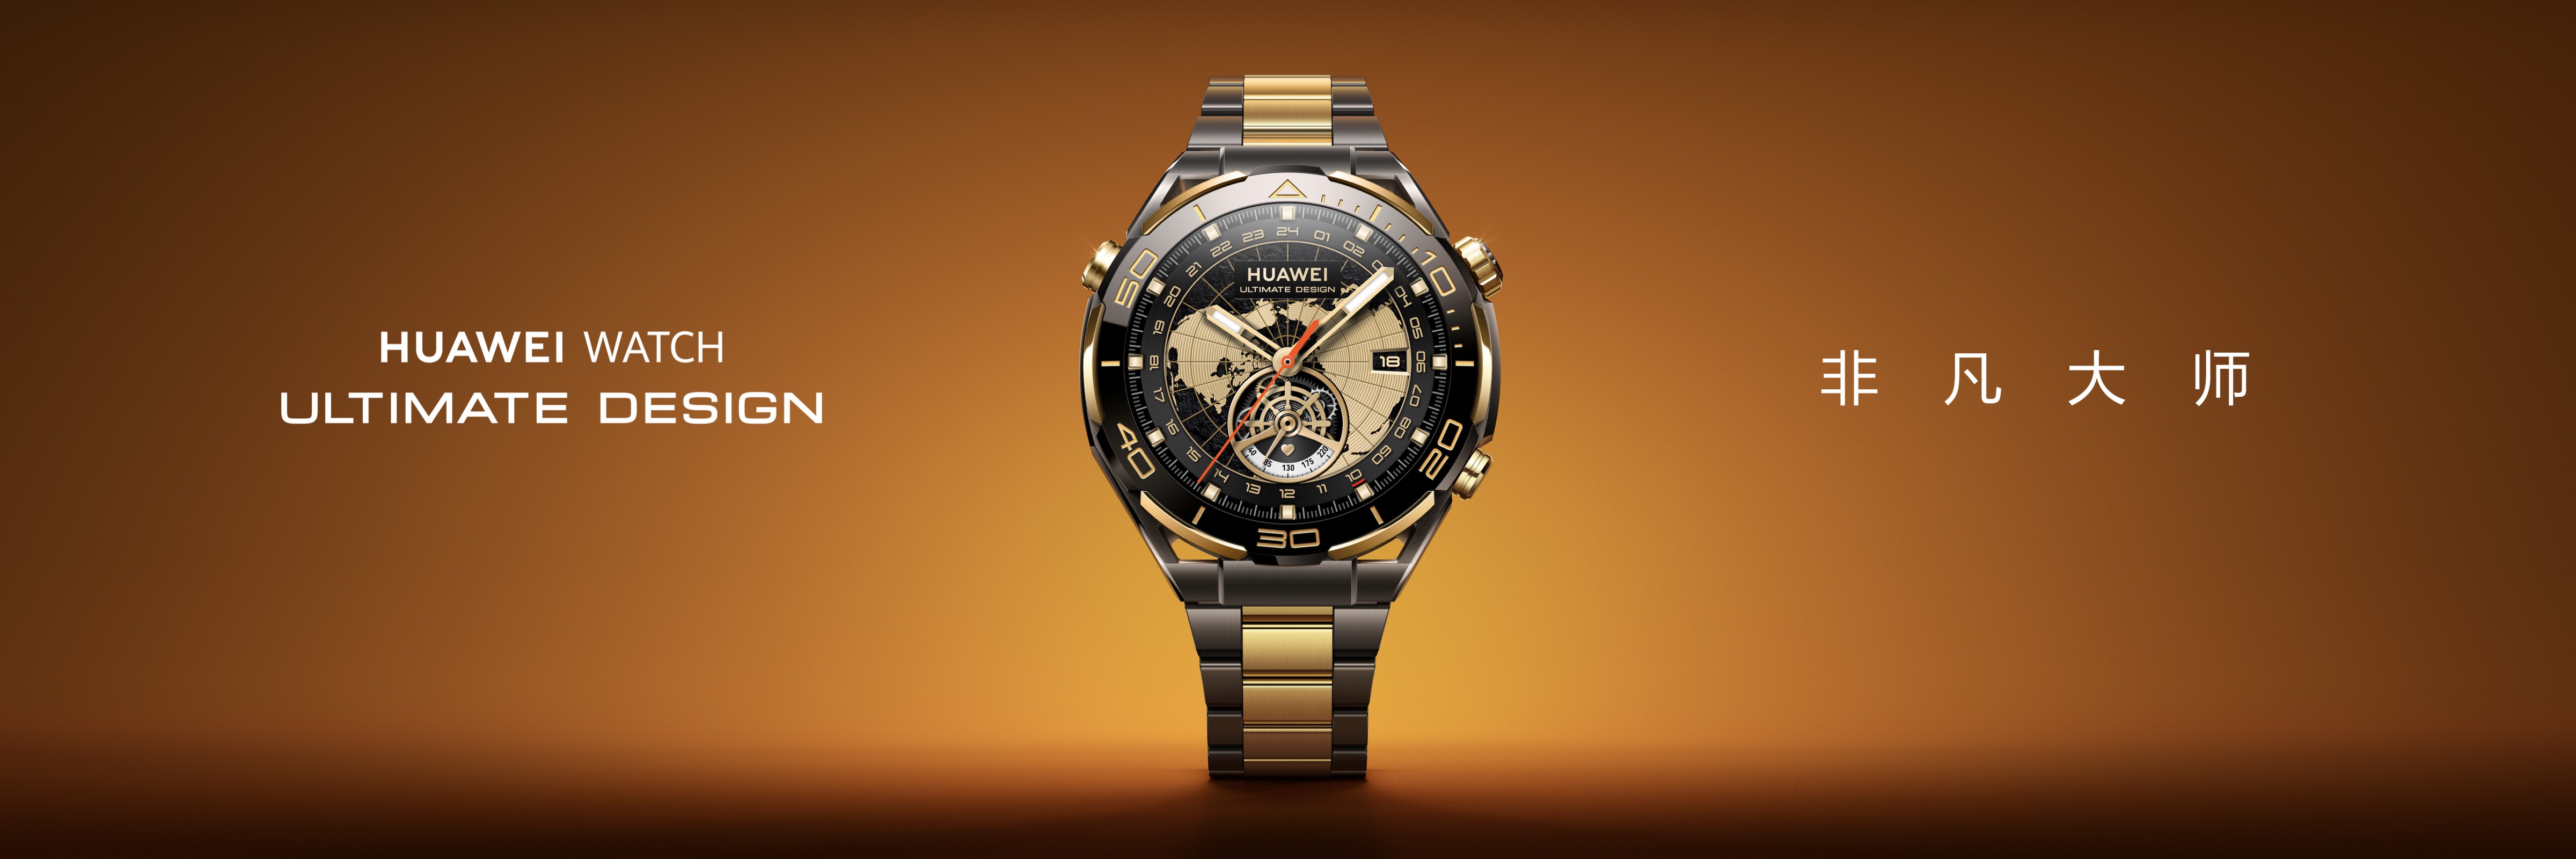 The Huawei Watch Ultimate Design. /Huawei